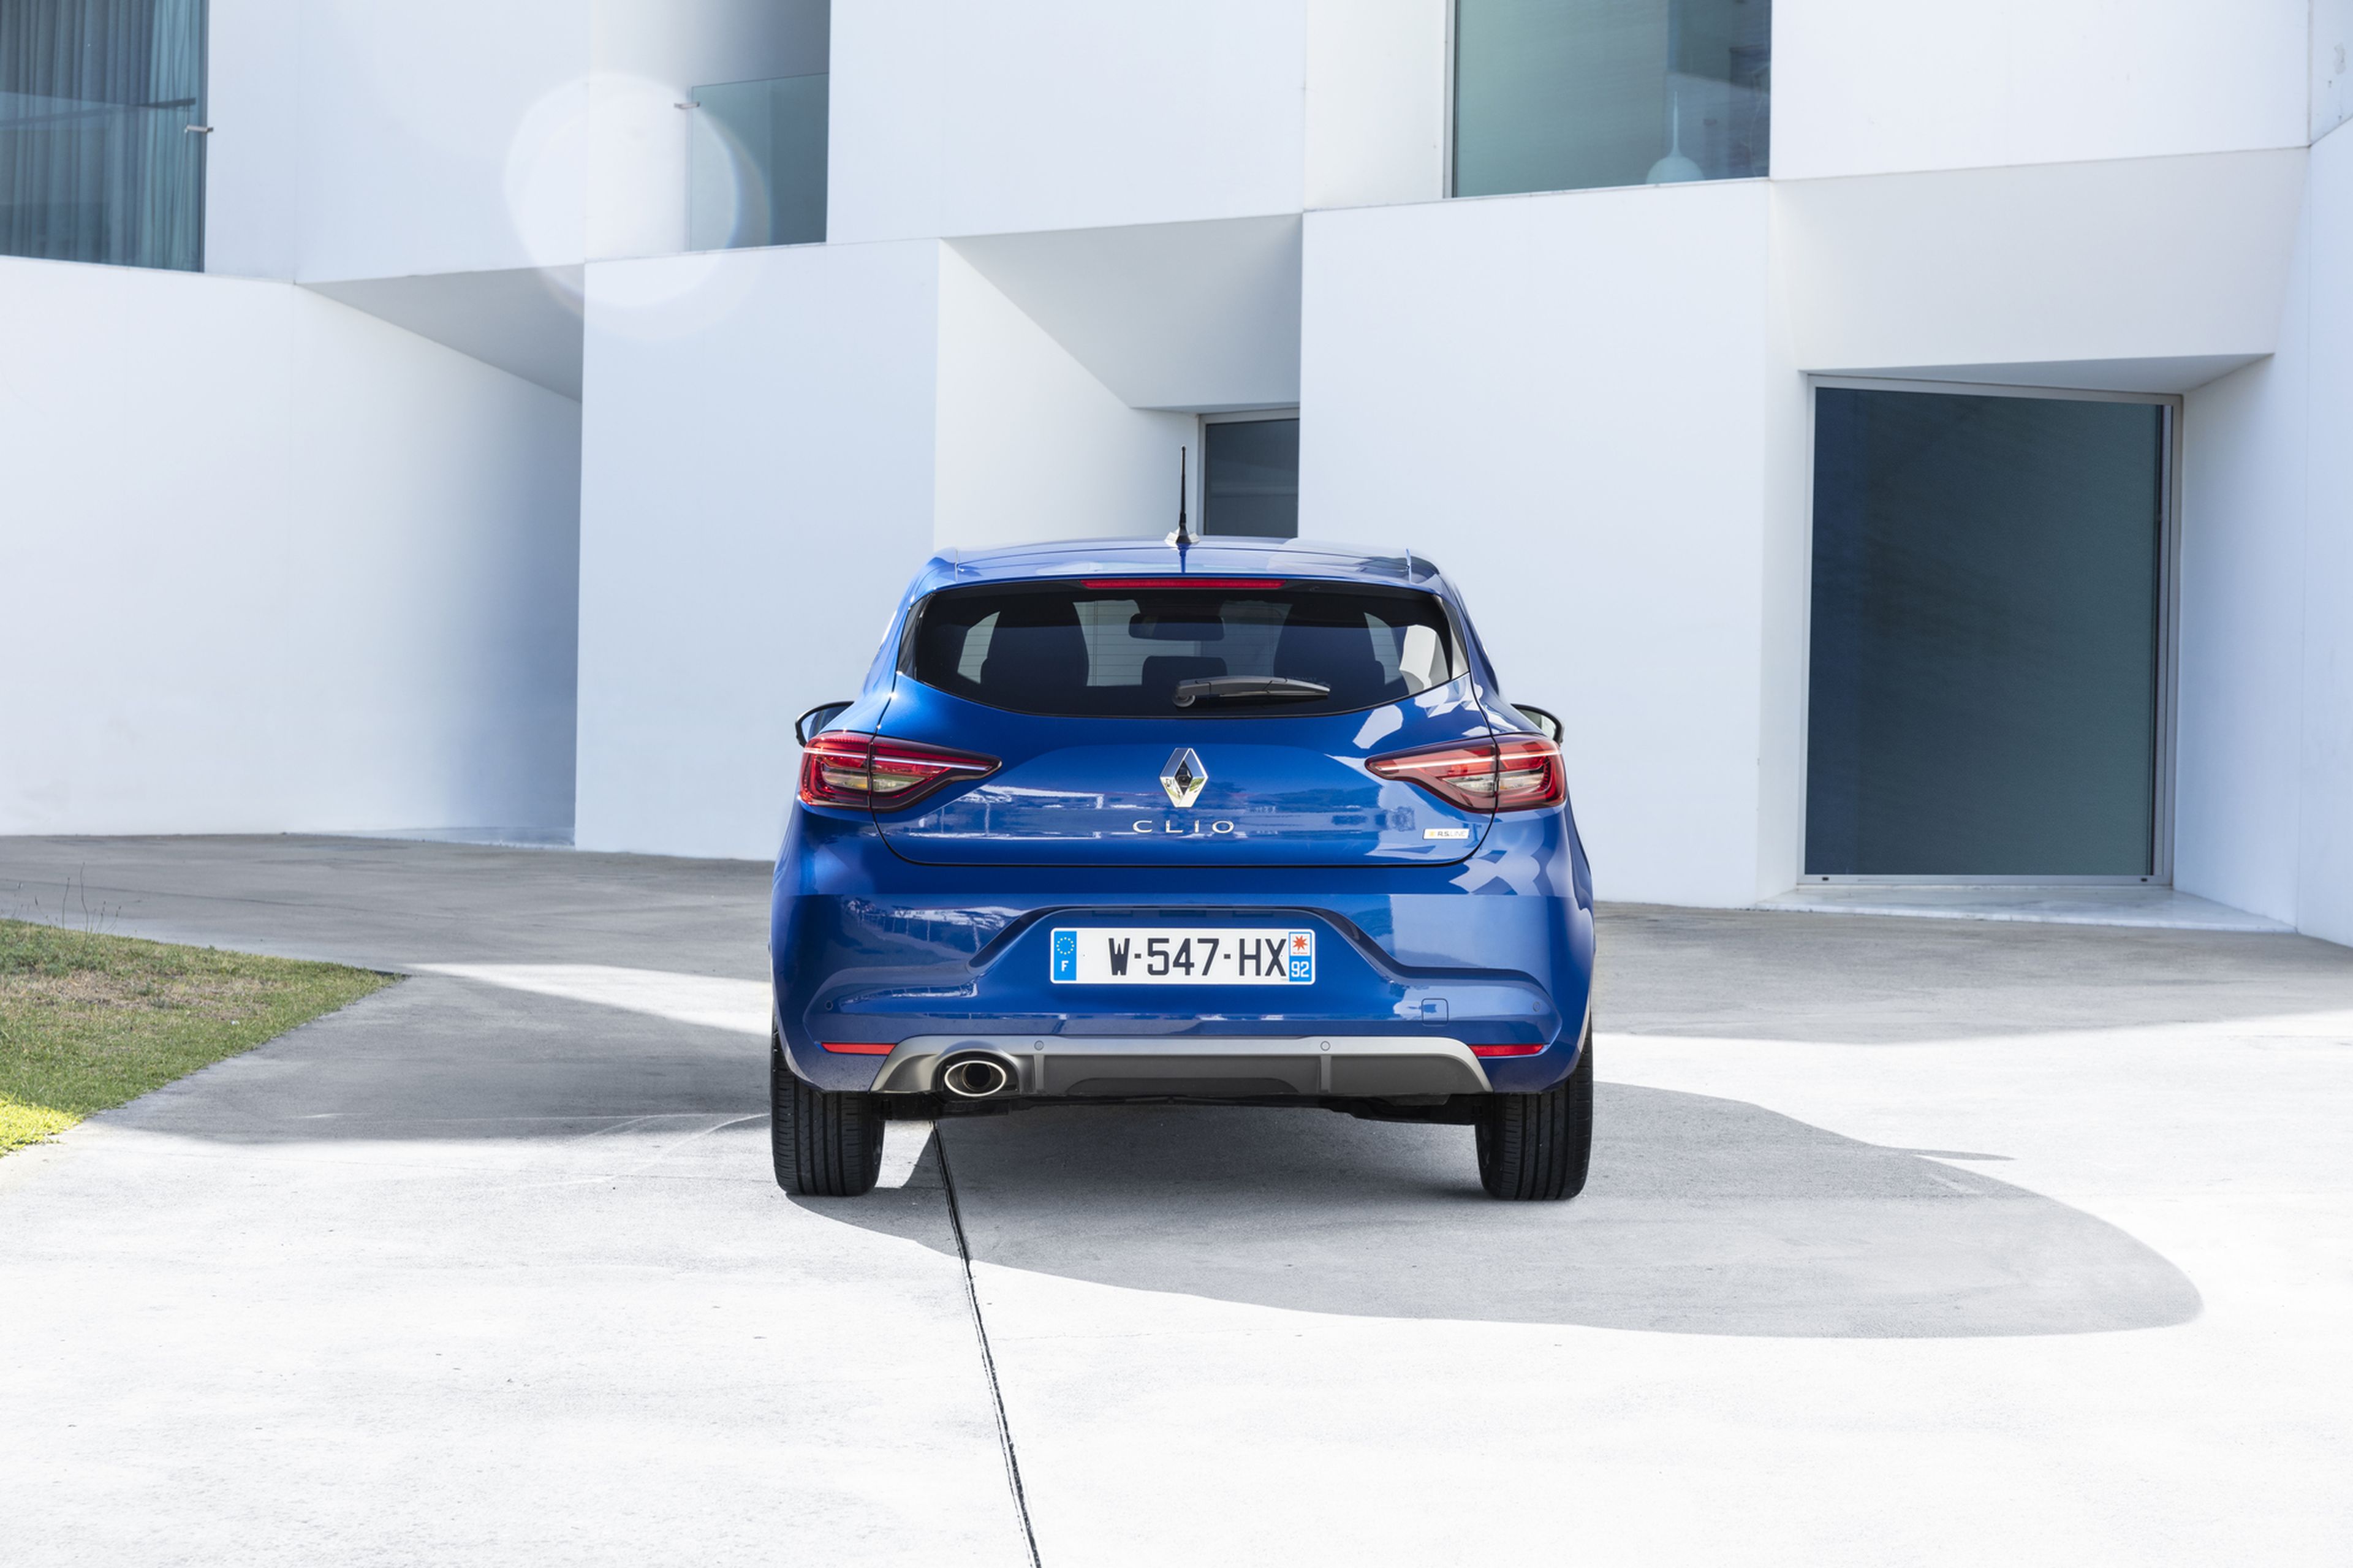 Prueba Renault Clio 2019 1.3 TCe